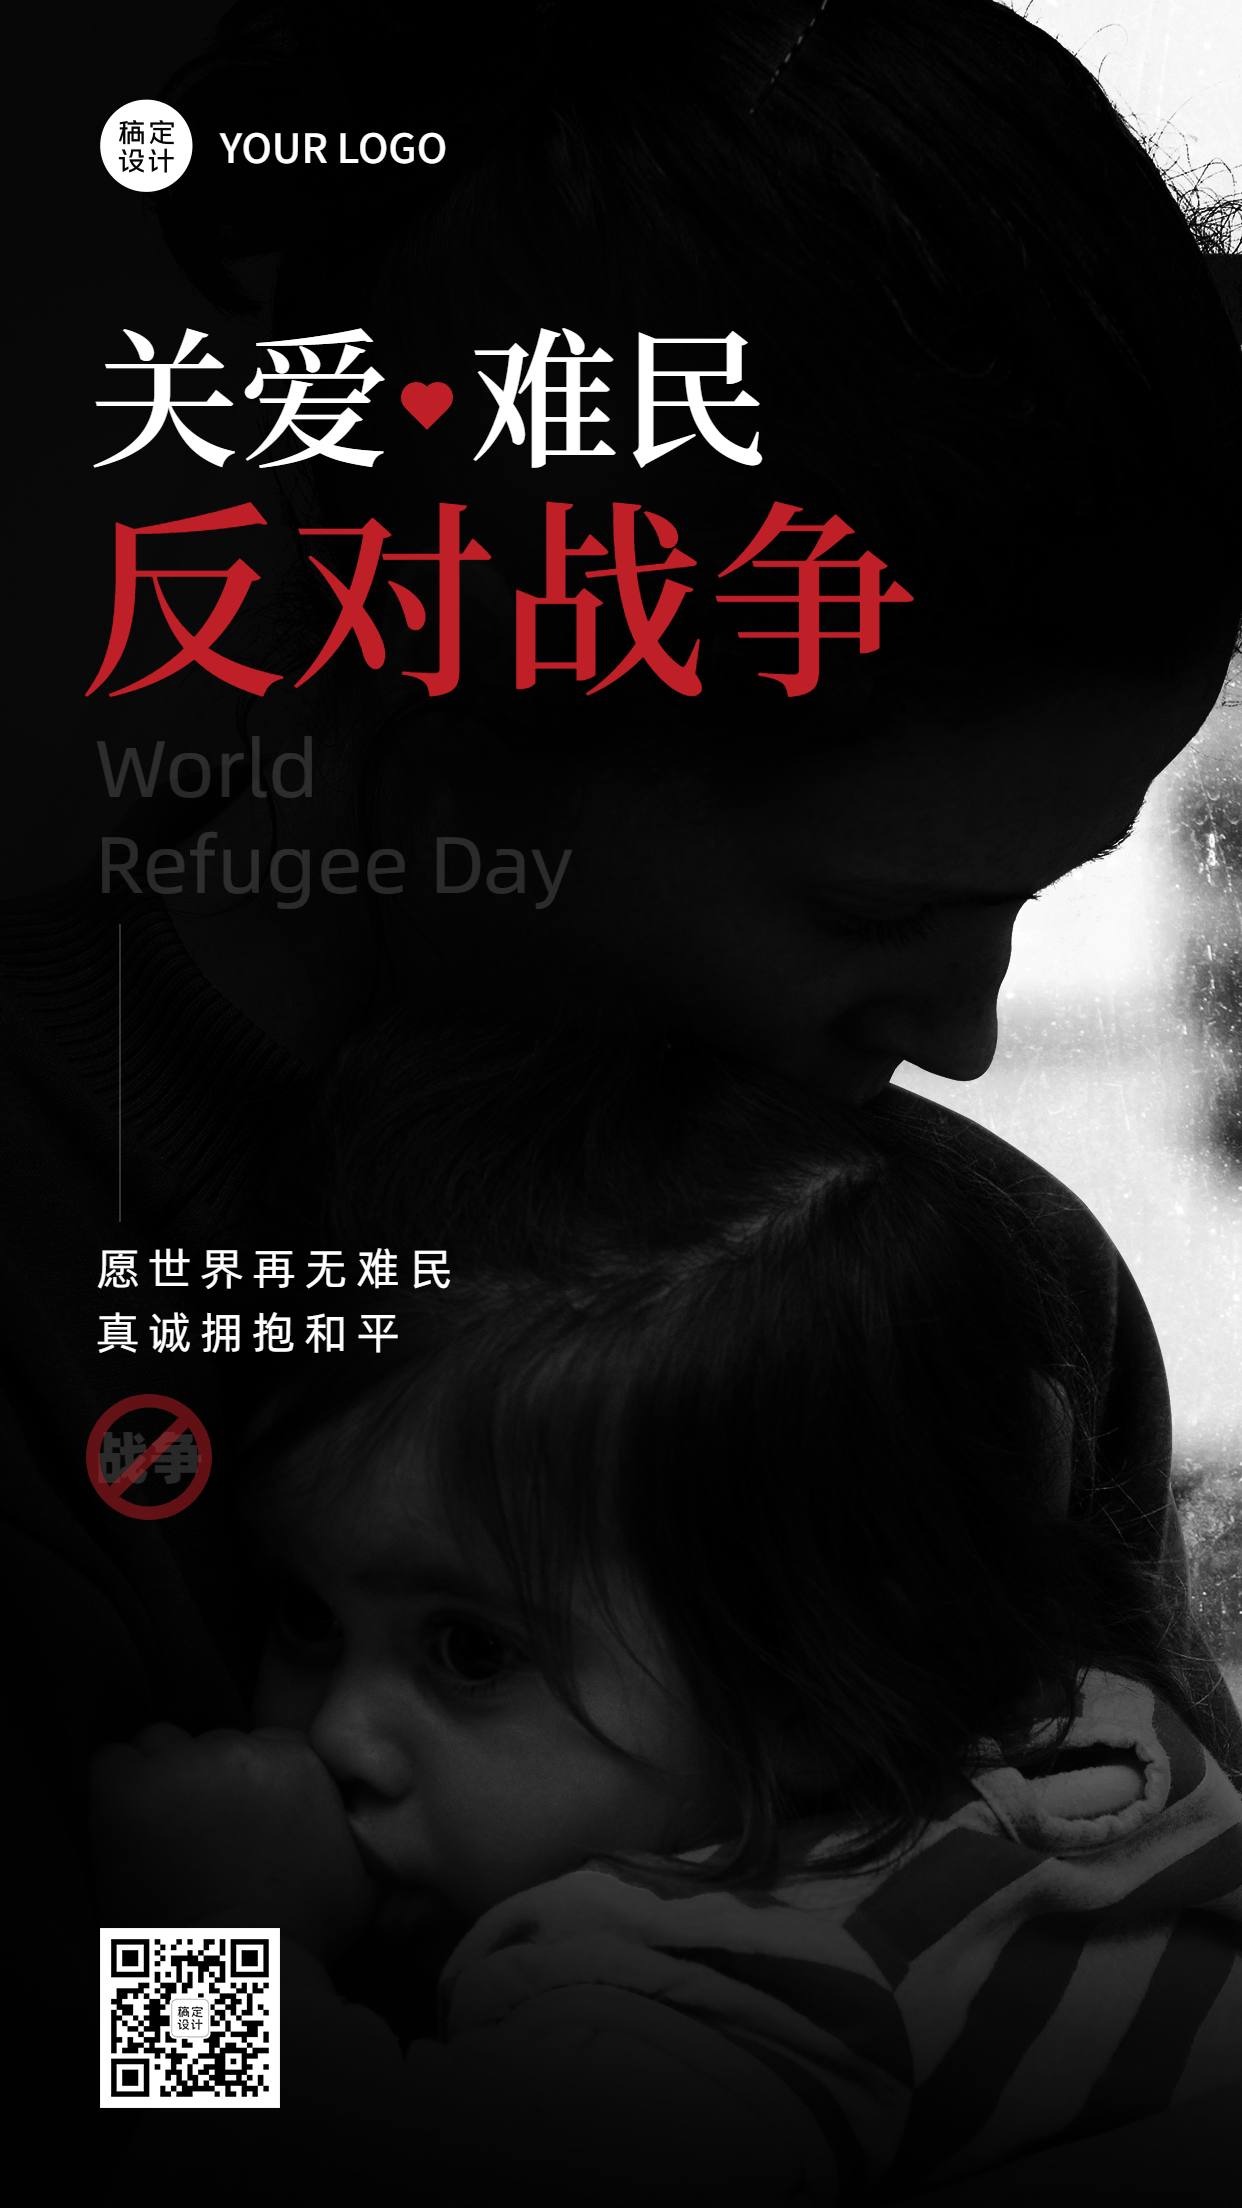 世界难民日节日宣传创意实景手机海报预览效果